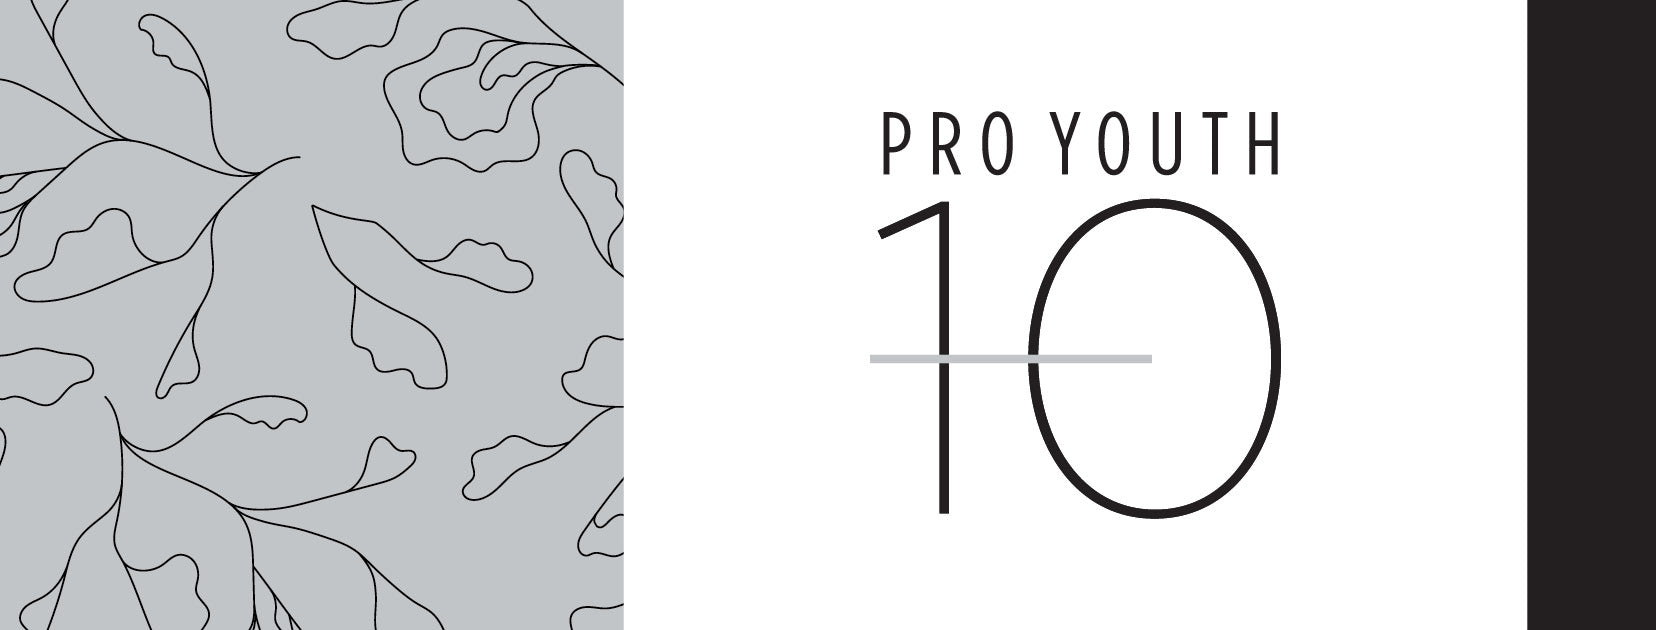 Pro Youth -10 Moisturizers & Hydrators